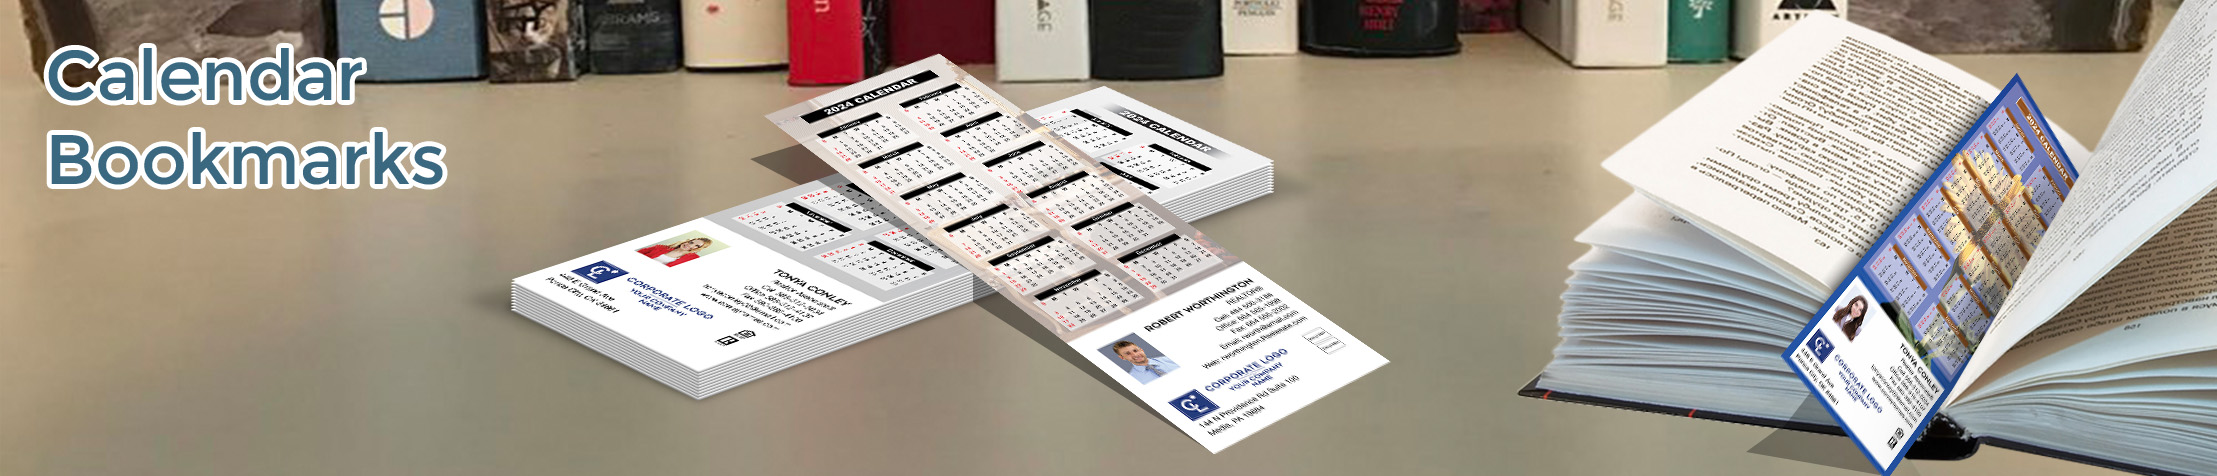 Coldwell Banker Real Estate Calendar Bookmarks - Coldwell Banker  2019 calendars printed on book markers | BestPrintBuy.com